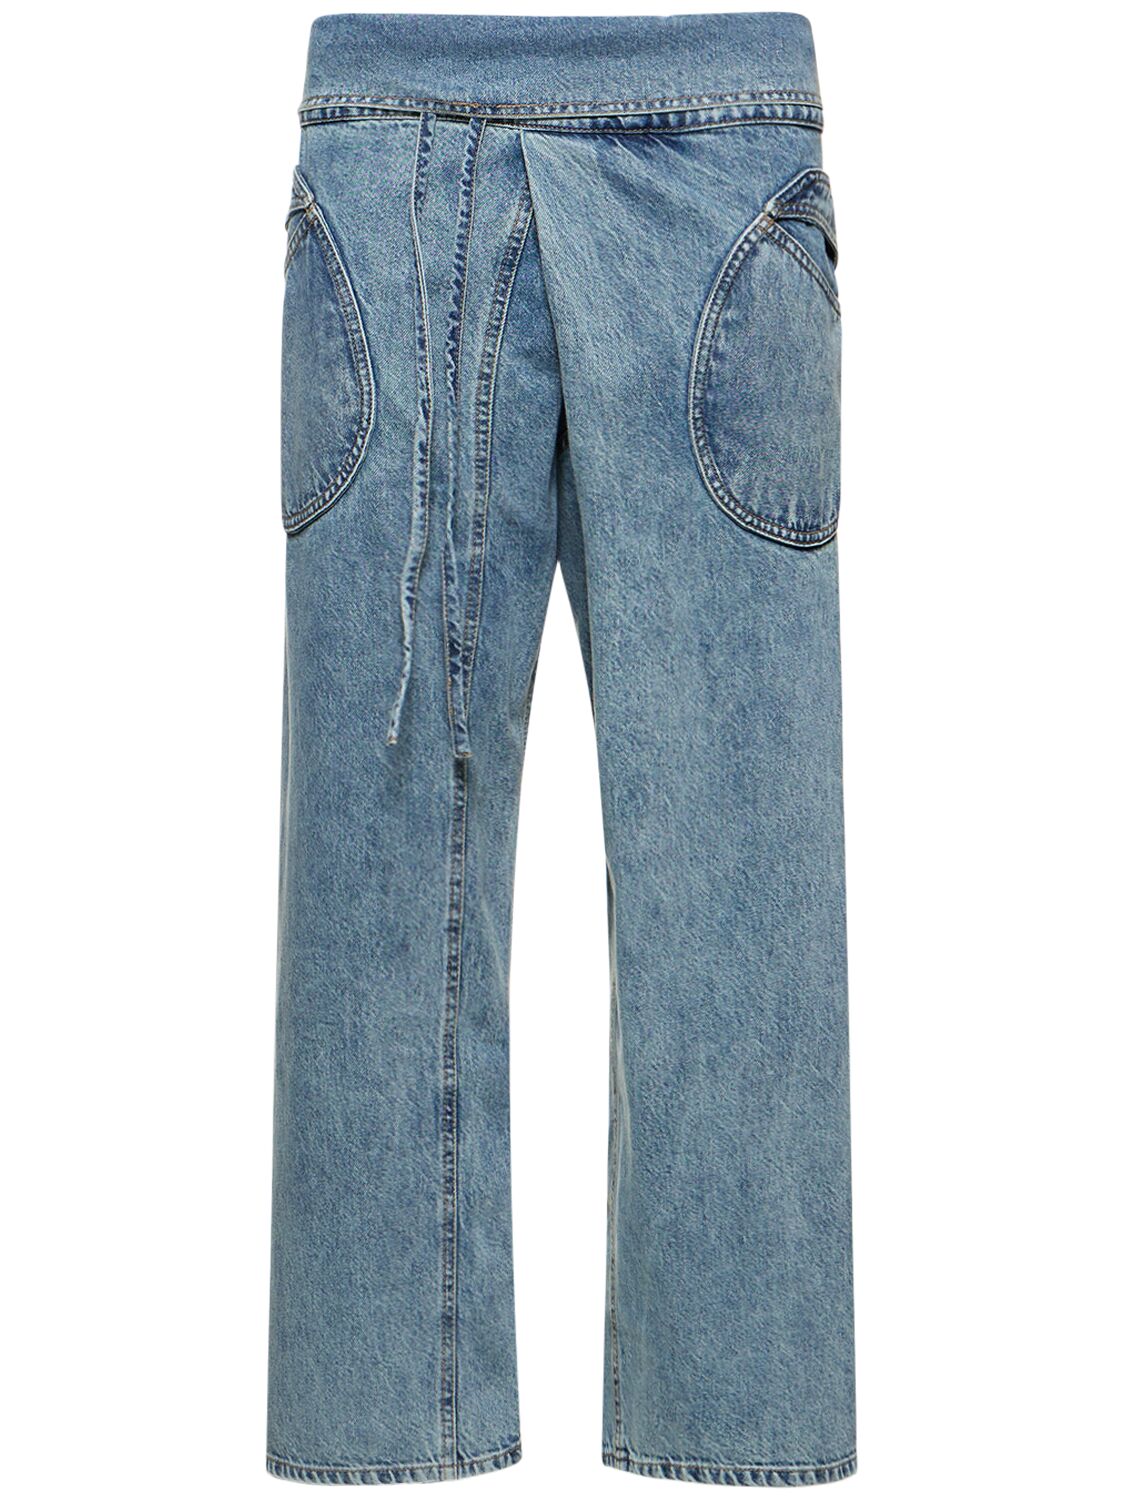 GIMAGUAS Oahu Cotton Jeans